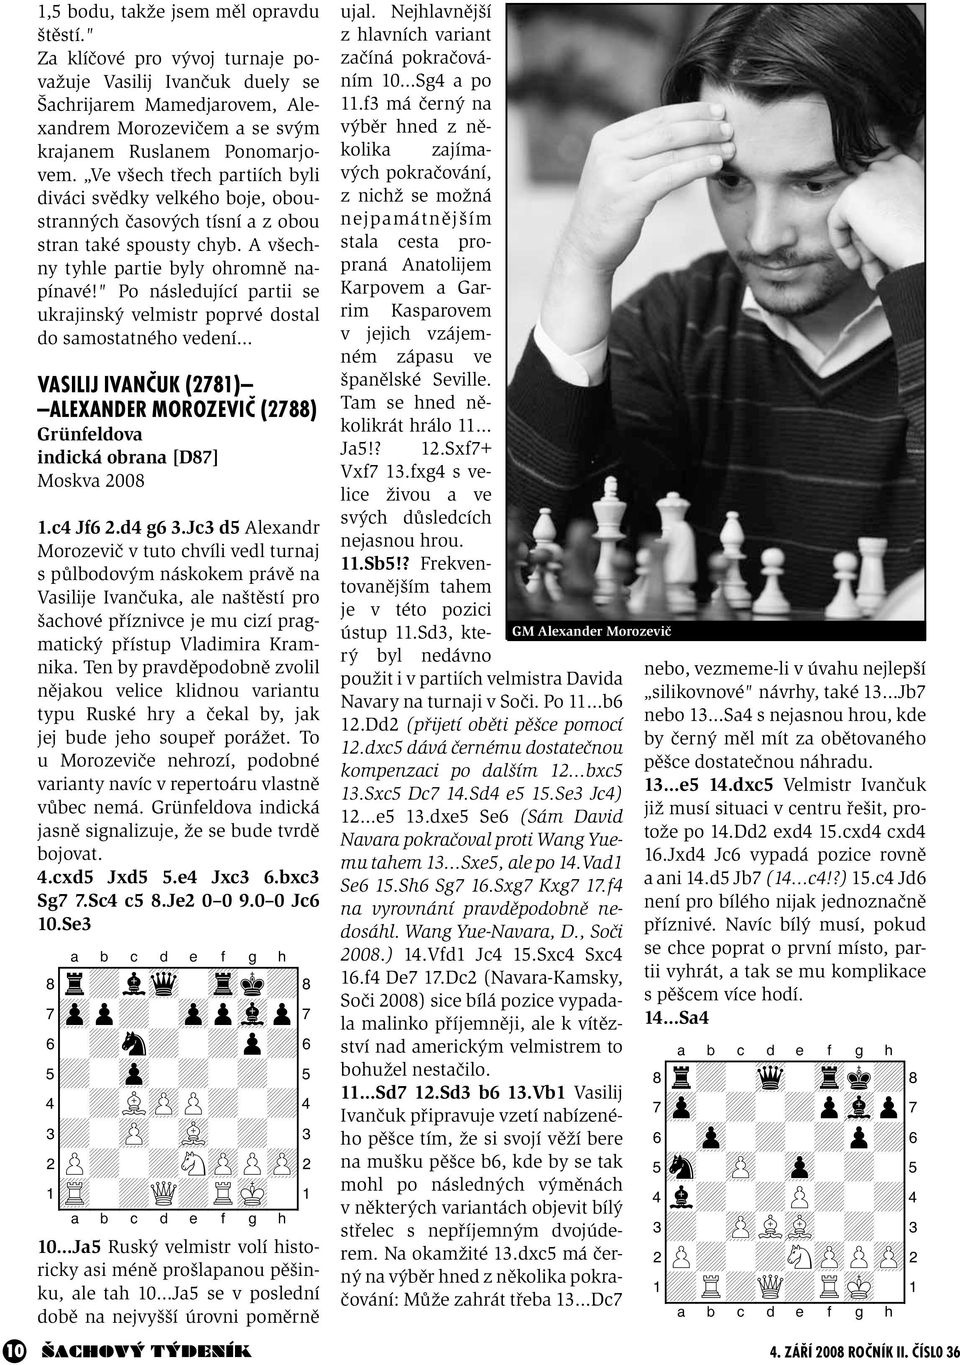 " Po následující partii se ukrajinský velmistr poprvé dostal do samostatného vedení VASILIJ IVANČUK (2781) ALEXANDER MOROZEVIČ (2788) Grünfeldova indická obrana [D87] Moskva 2008 1.c4 Jf6 2.d4 g6 3.